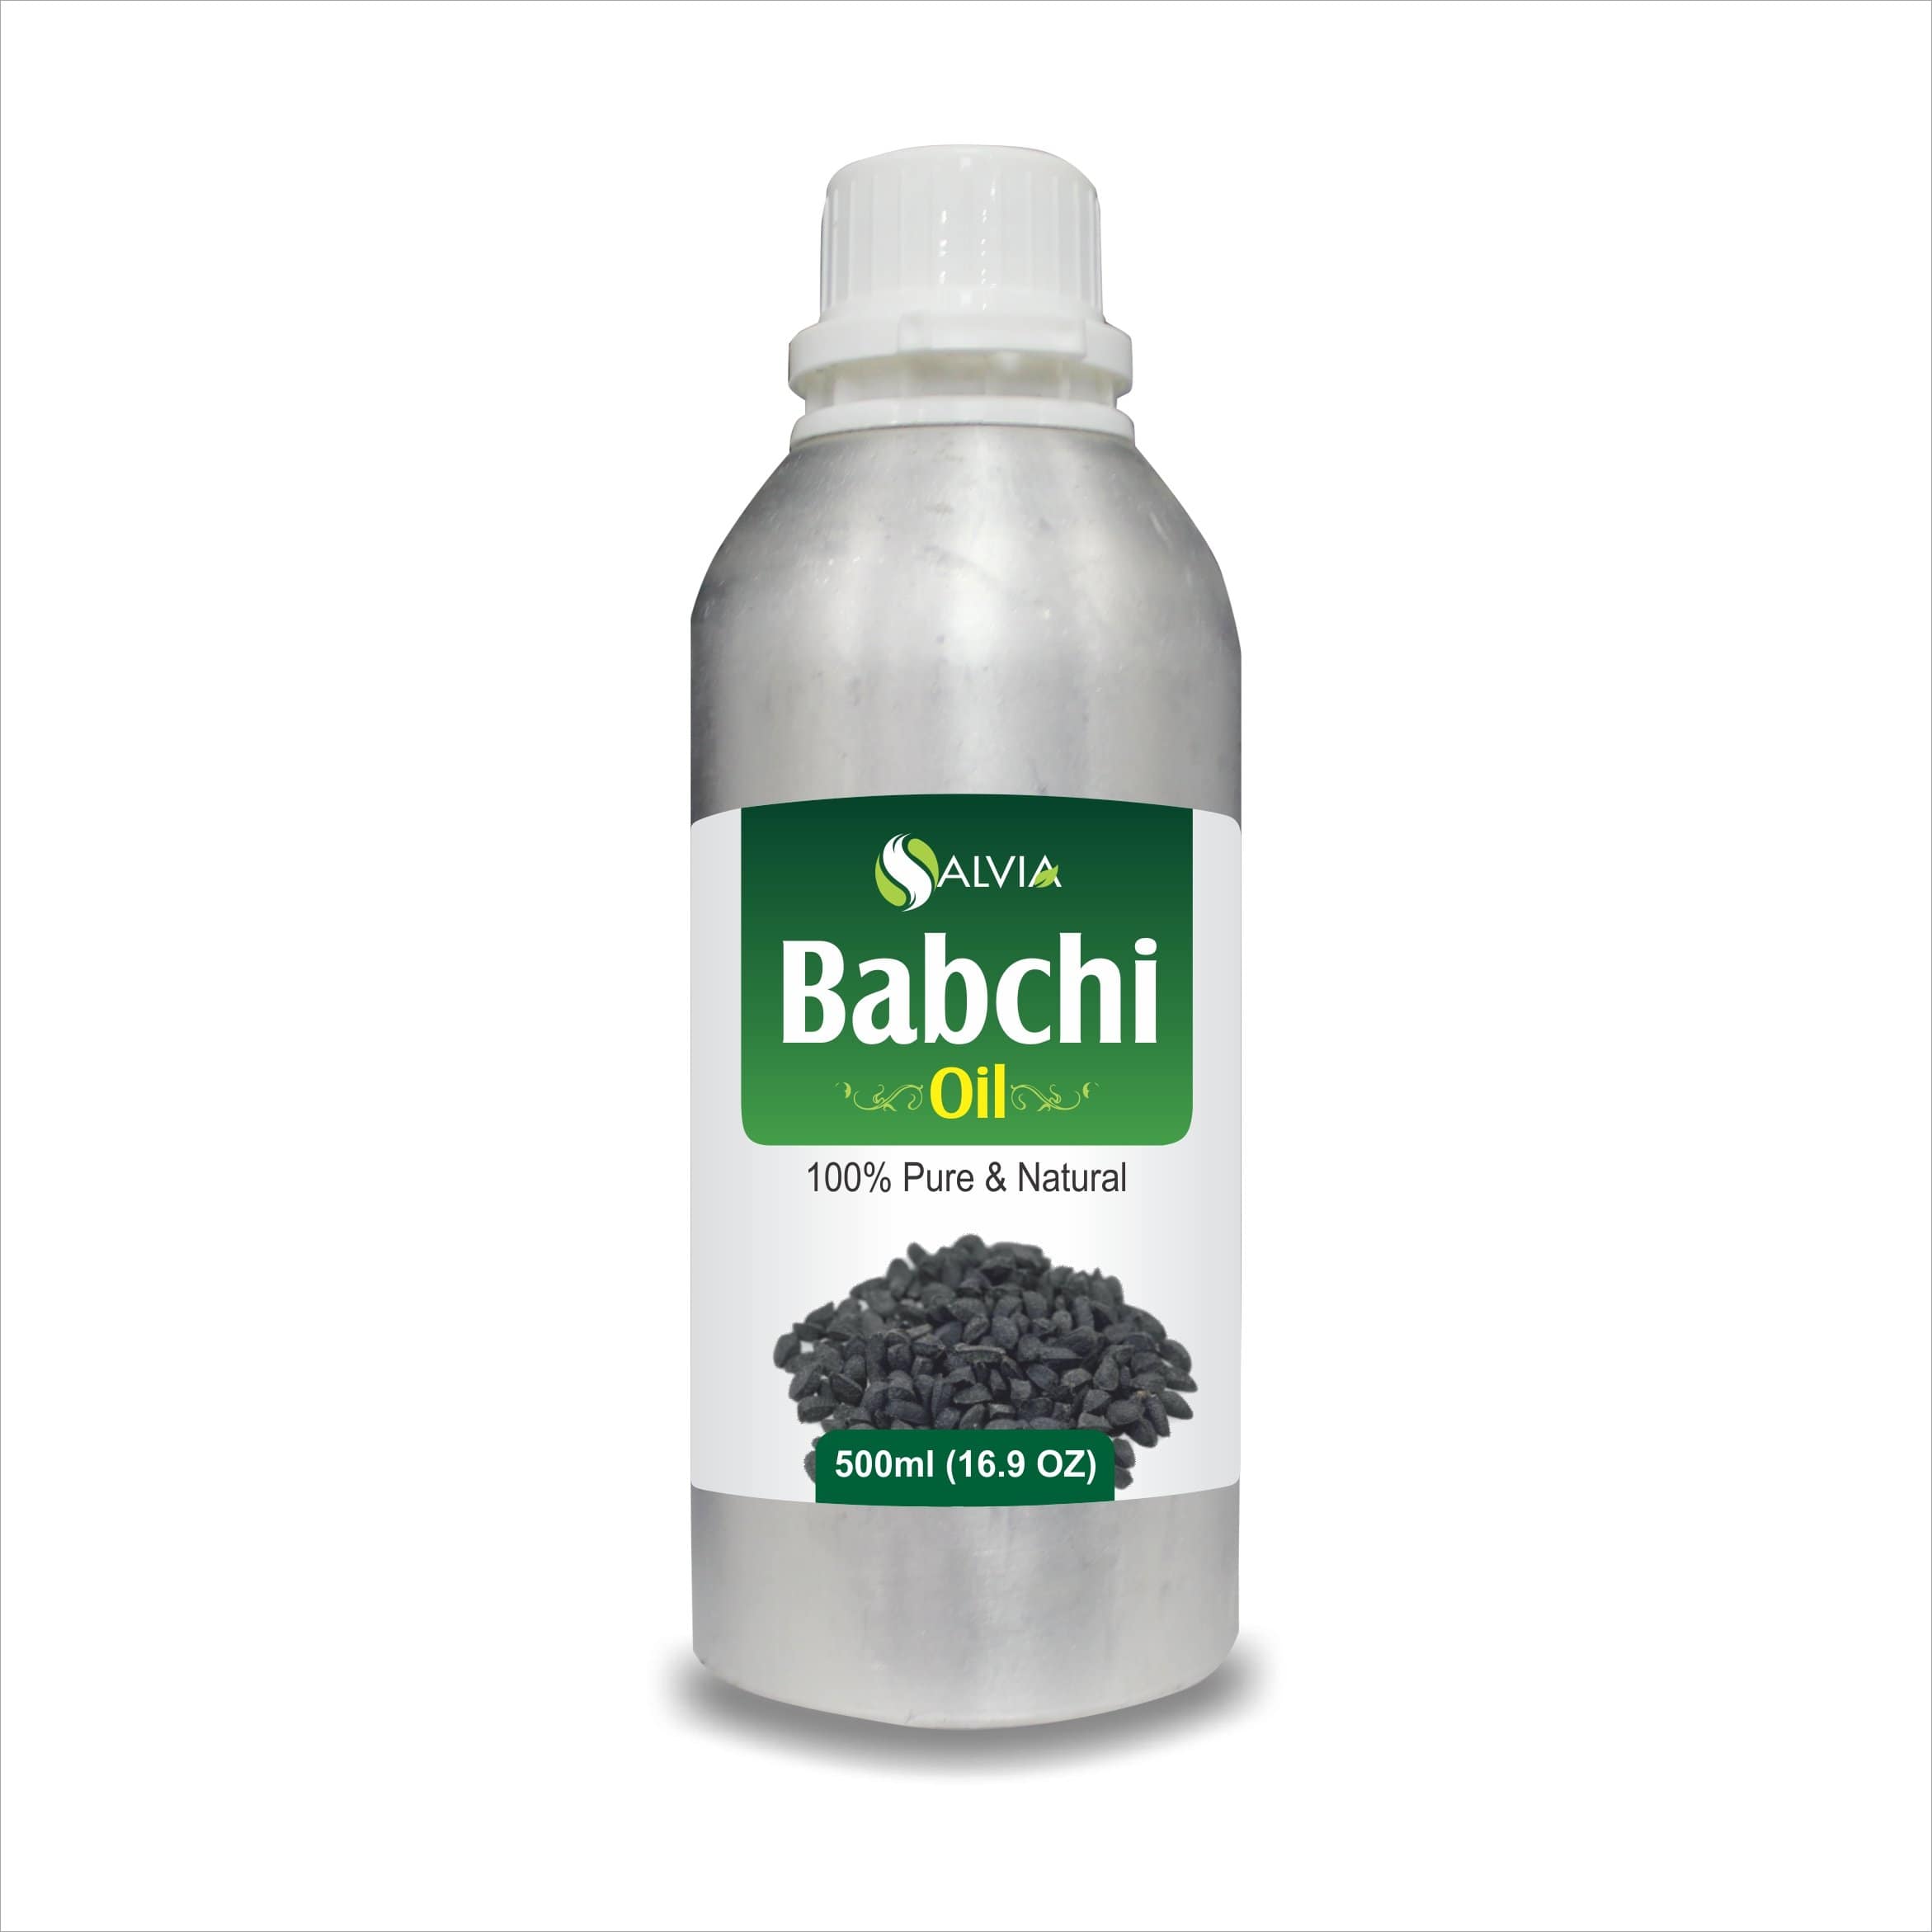 sbl babchi oil uses in hindi